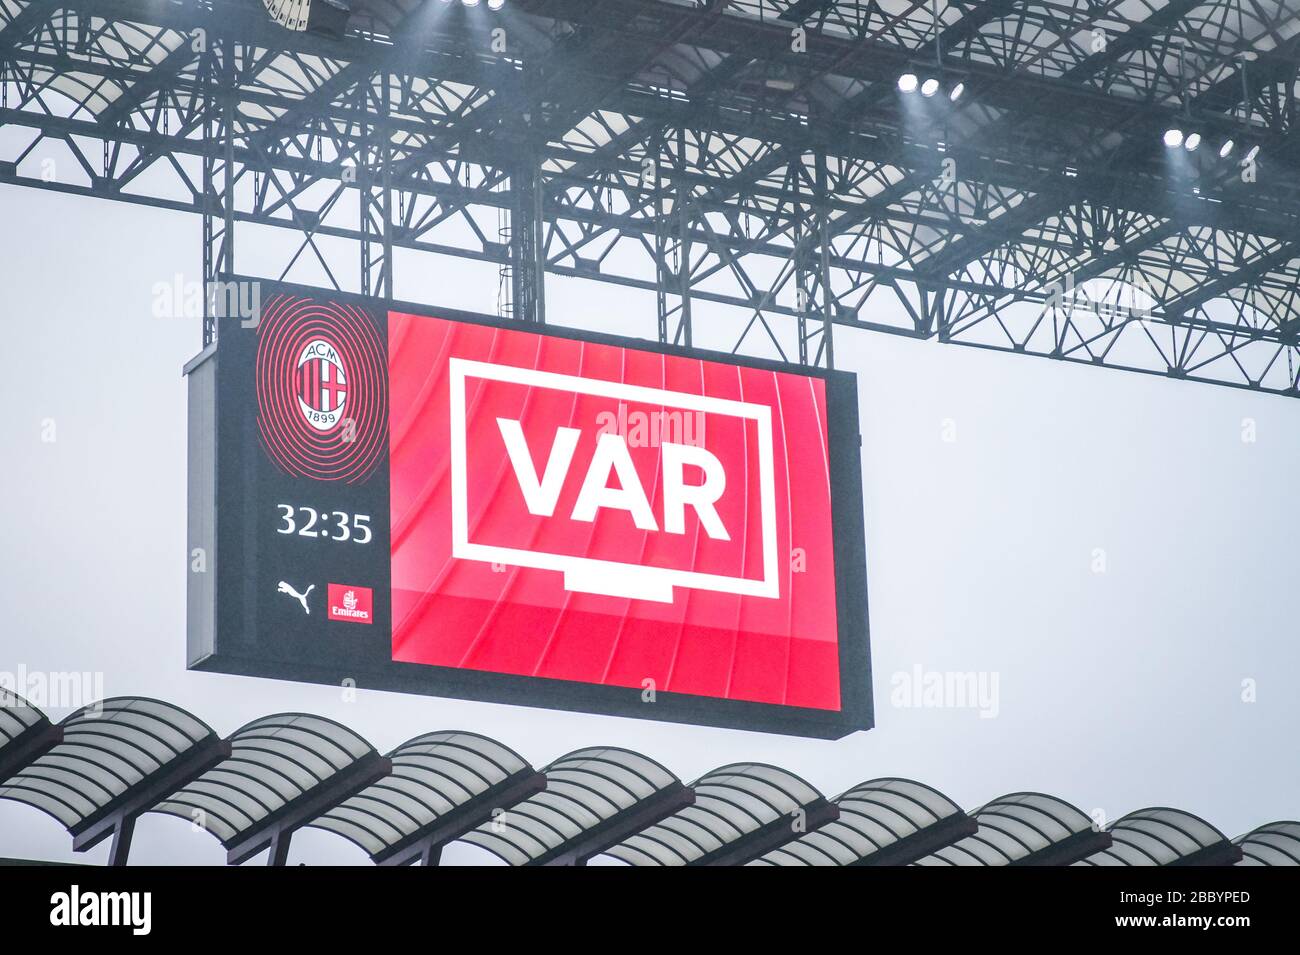 VAR durante la temporada de fútbol 2019/20 imágenes simbólicas - Photo credit Fabrizio Carabelli /LM/ Foto de stock